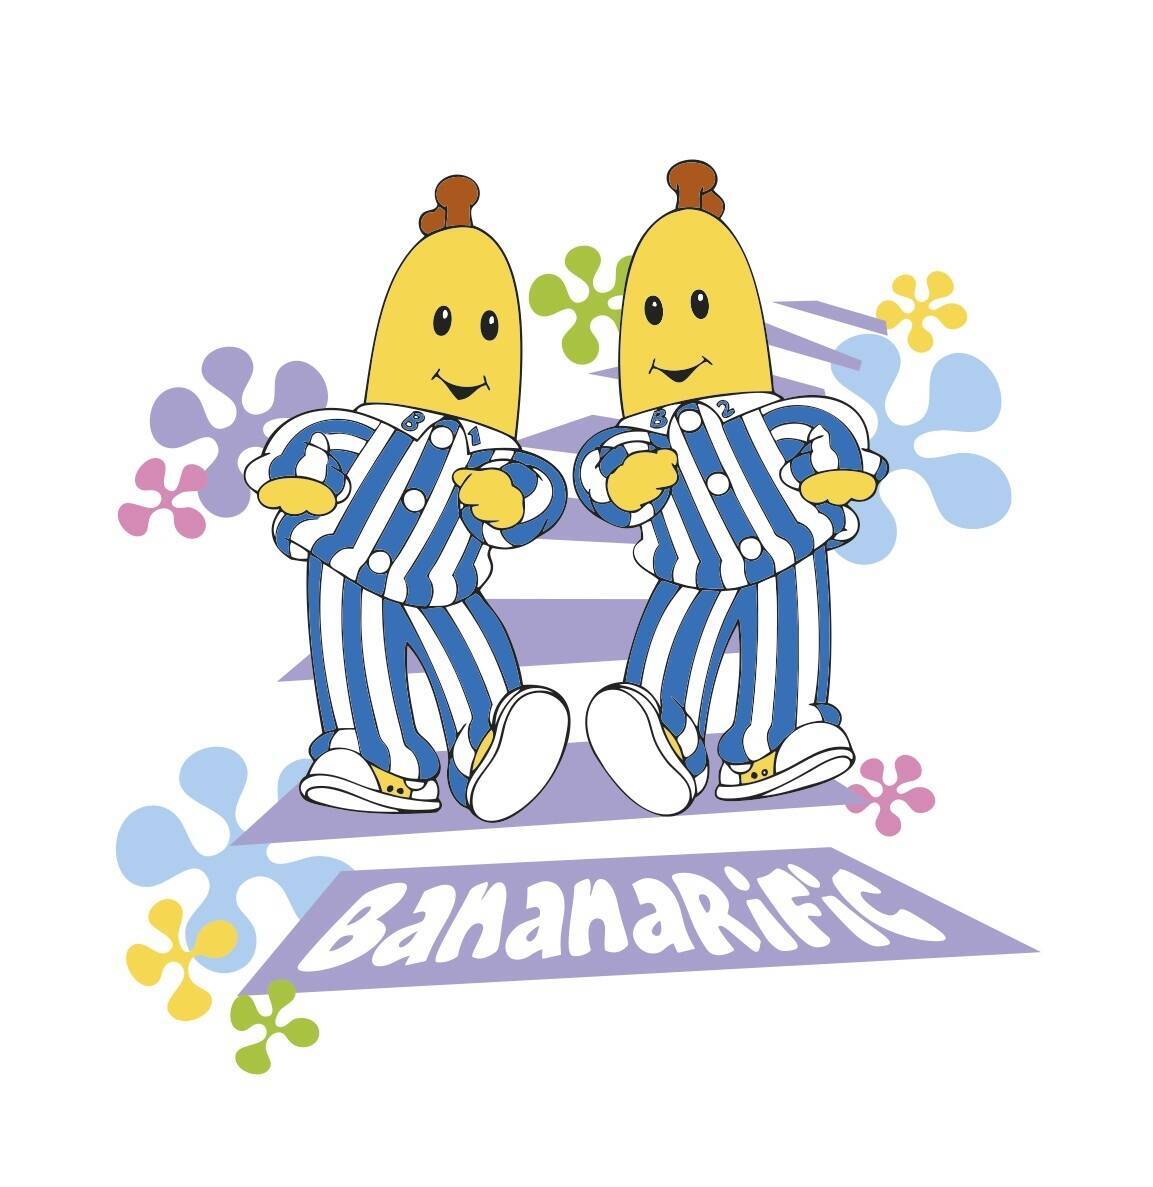 NHKで放送していた「バナナ イン パジャマ」グッズがいま発売されるワケ